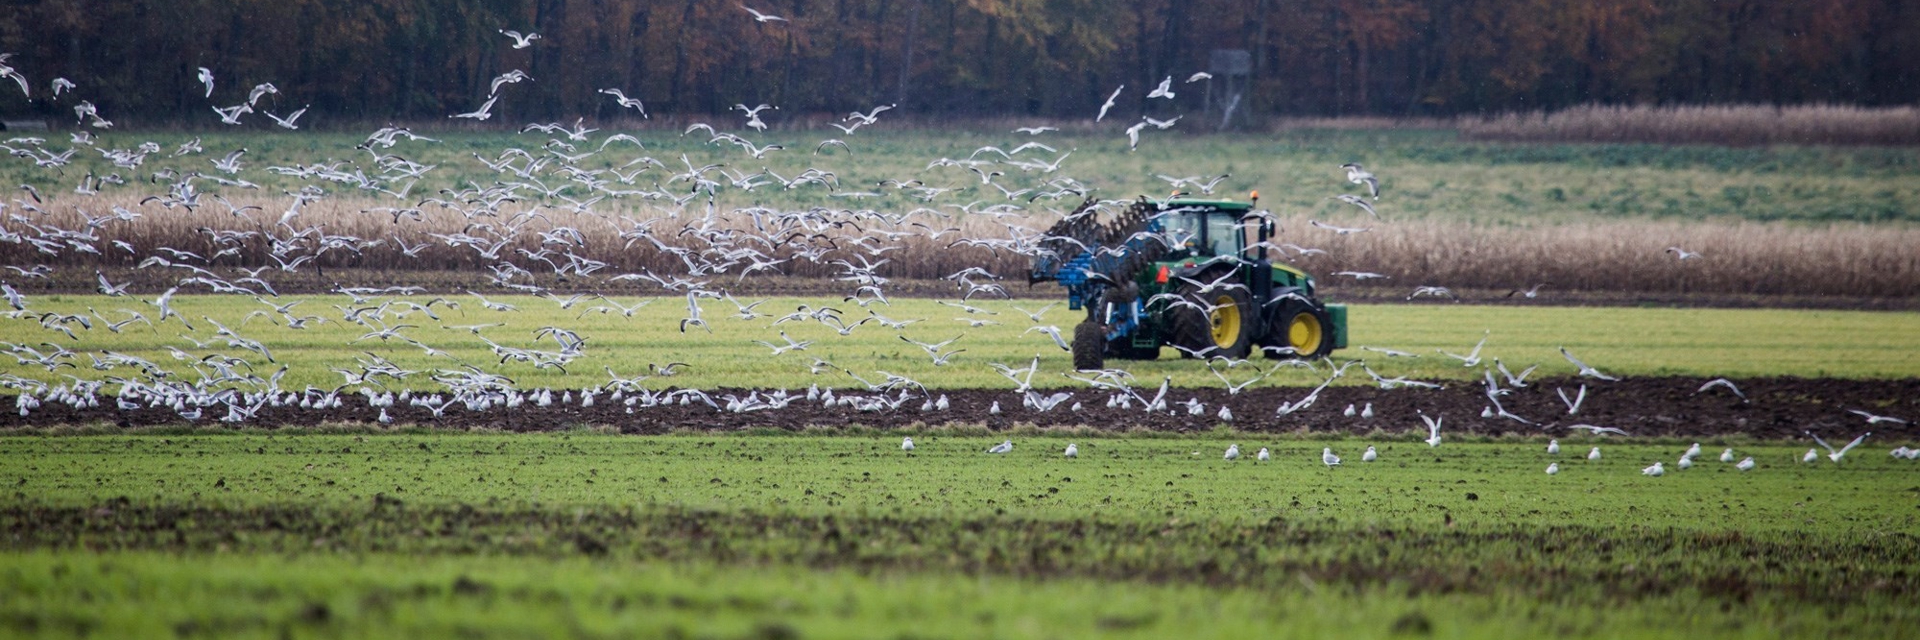 En traktor er ved at plove en mark imens måger flyver omkring 